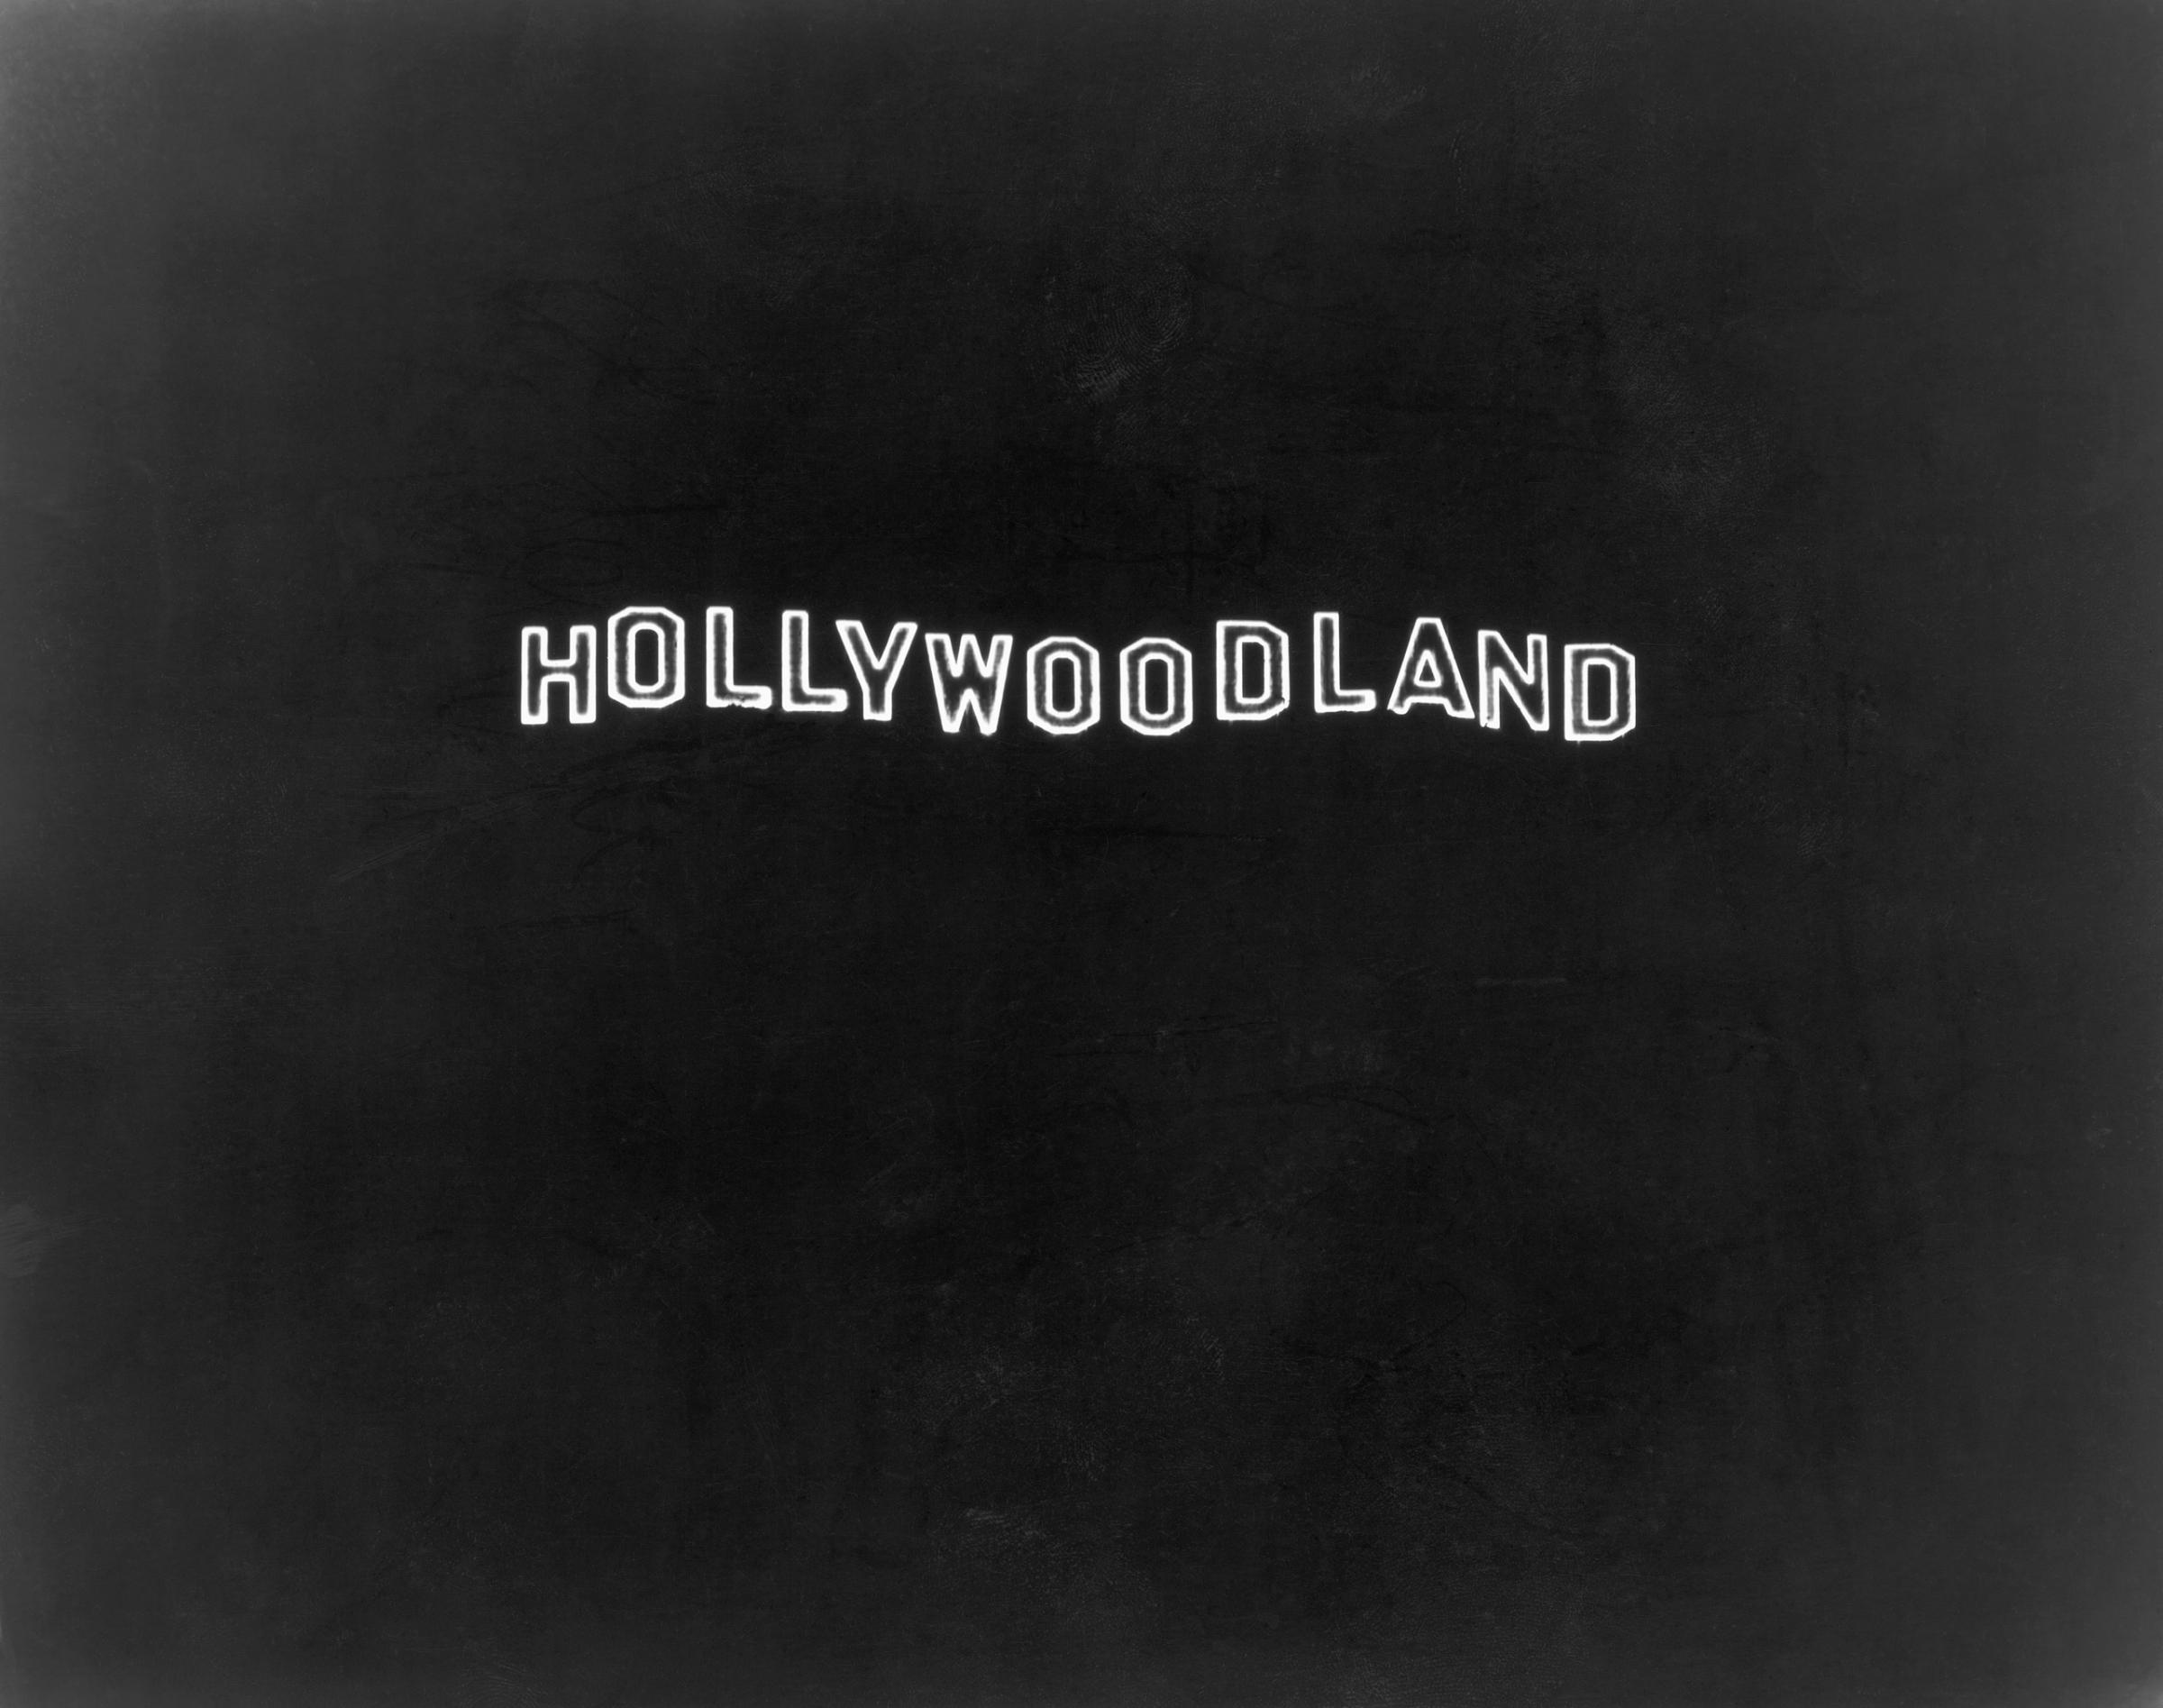 Hollywoodland sign at night, 1928.